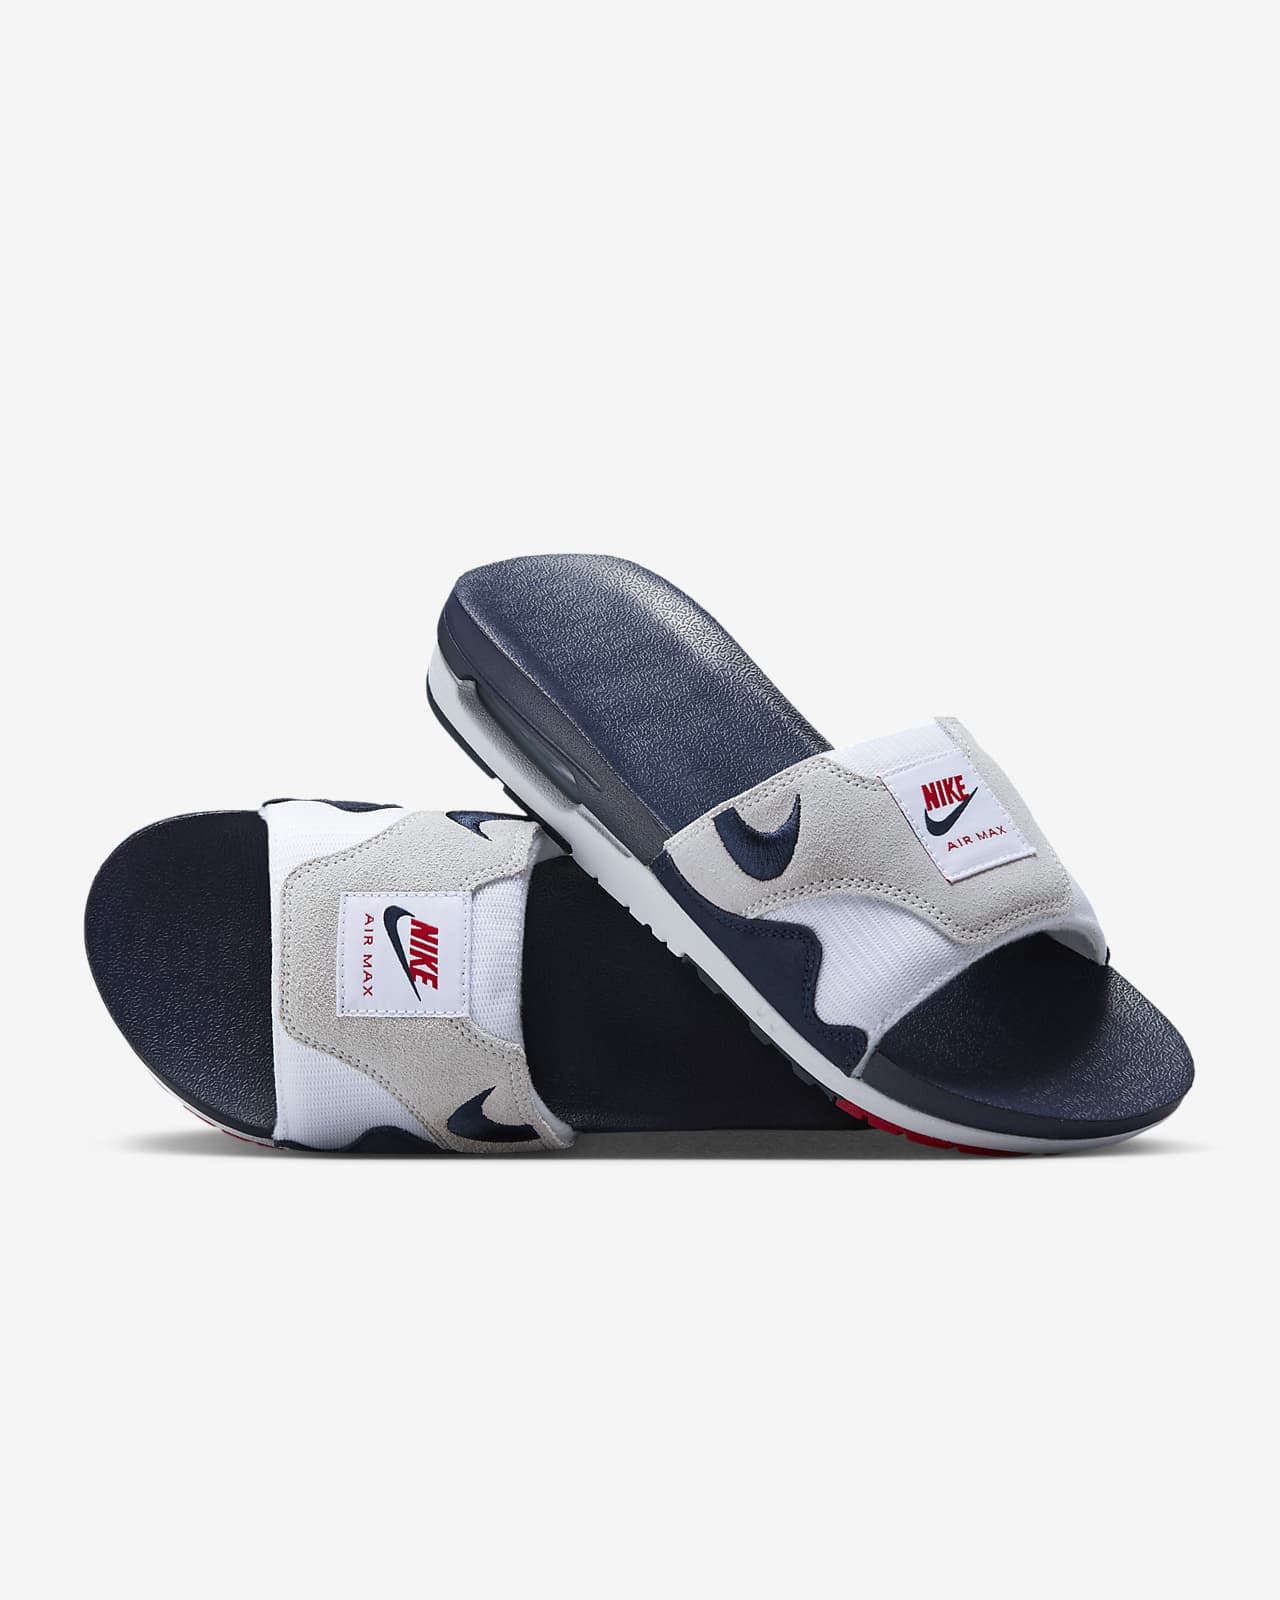 Nike Air Max Men's Slides. JP